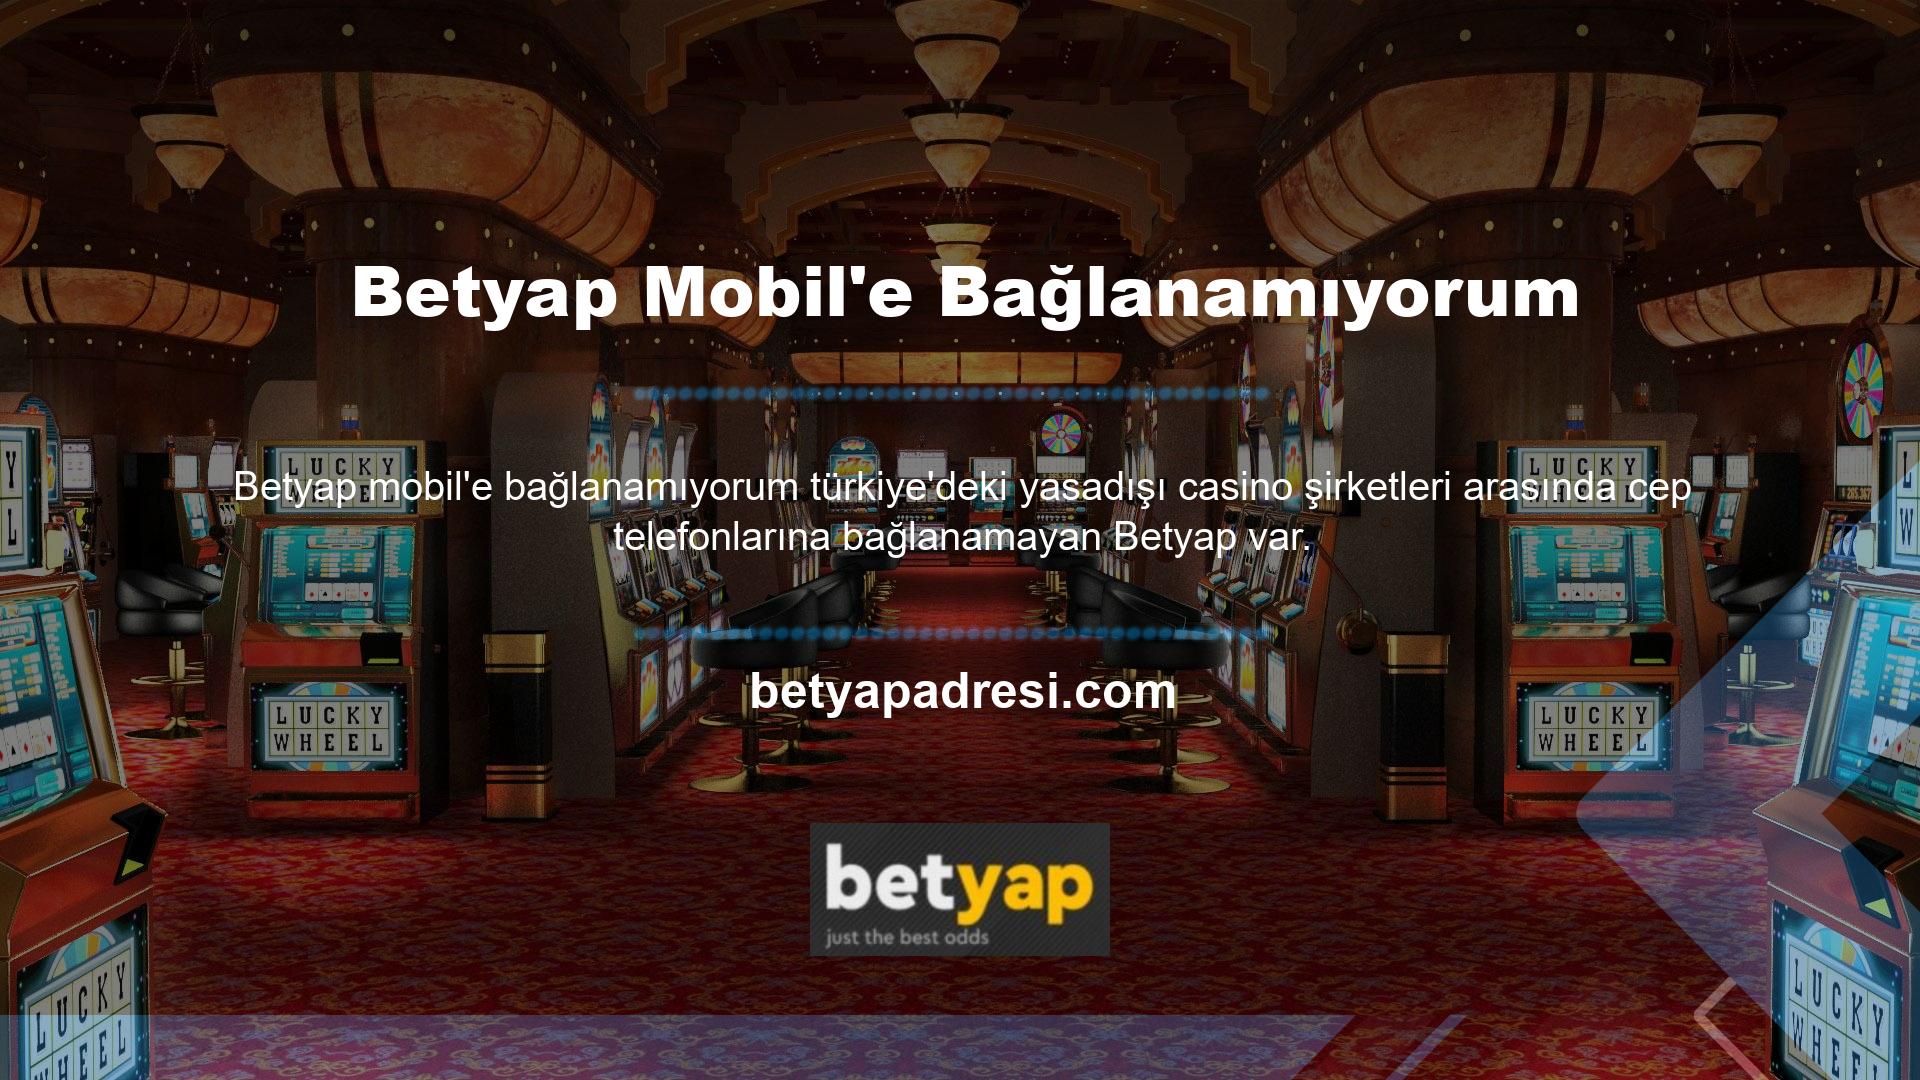 Betyap, ülkemizdeki tüm poker oyuncuları tarafından sevilen ve saygı duyulan bahisçilerden biridir